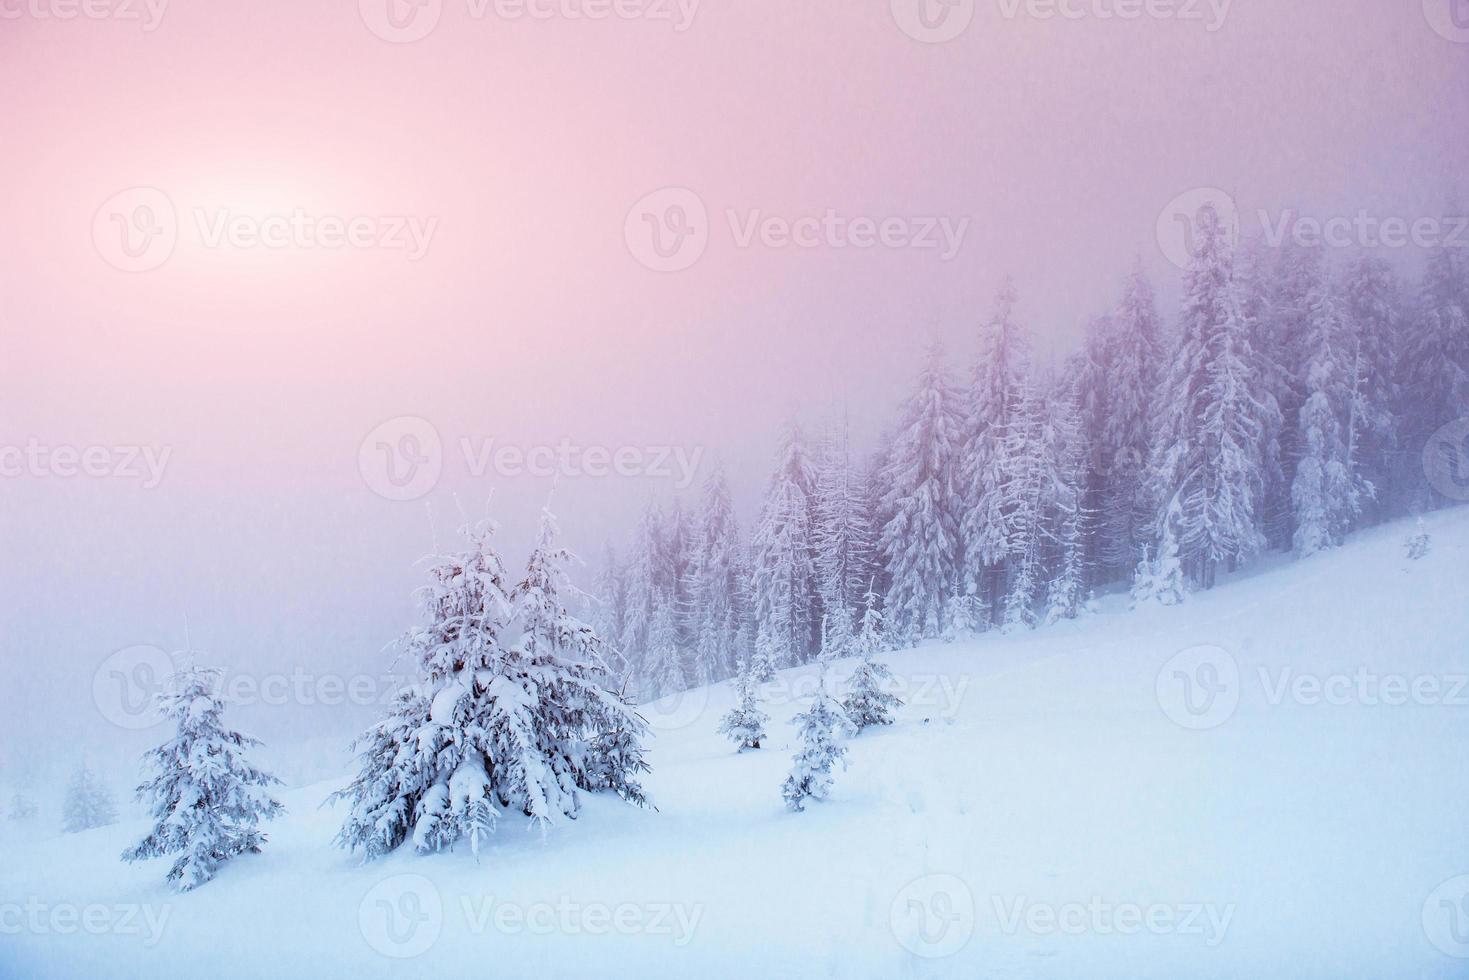 alberi del paesaggio invernale nel gelo e nella nebbia foto